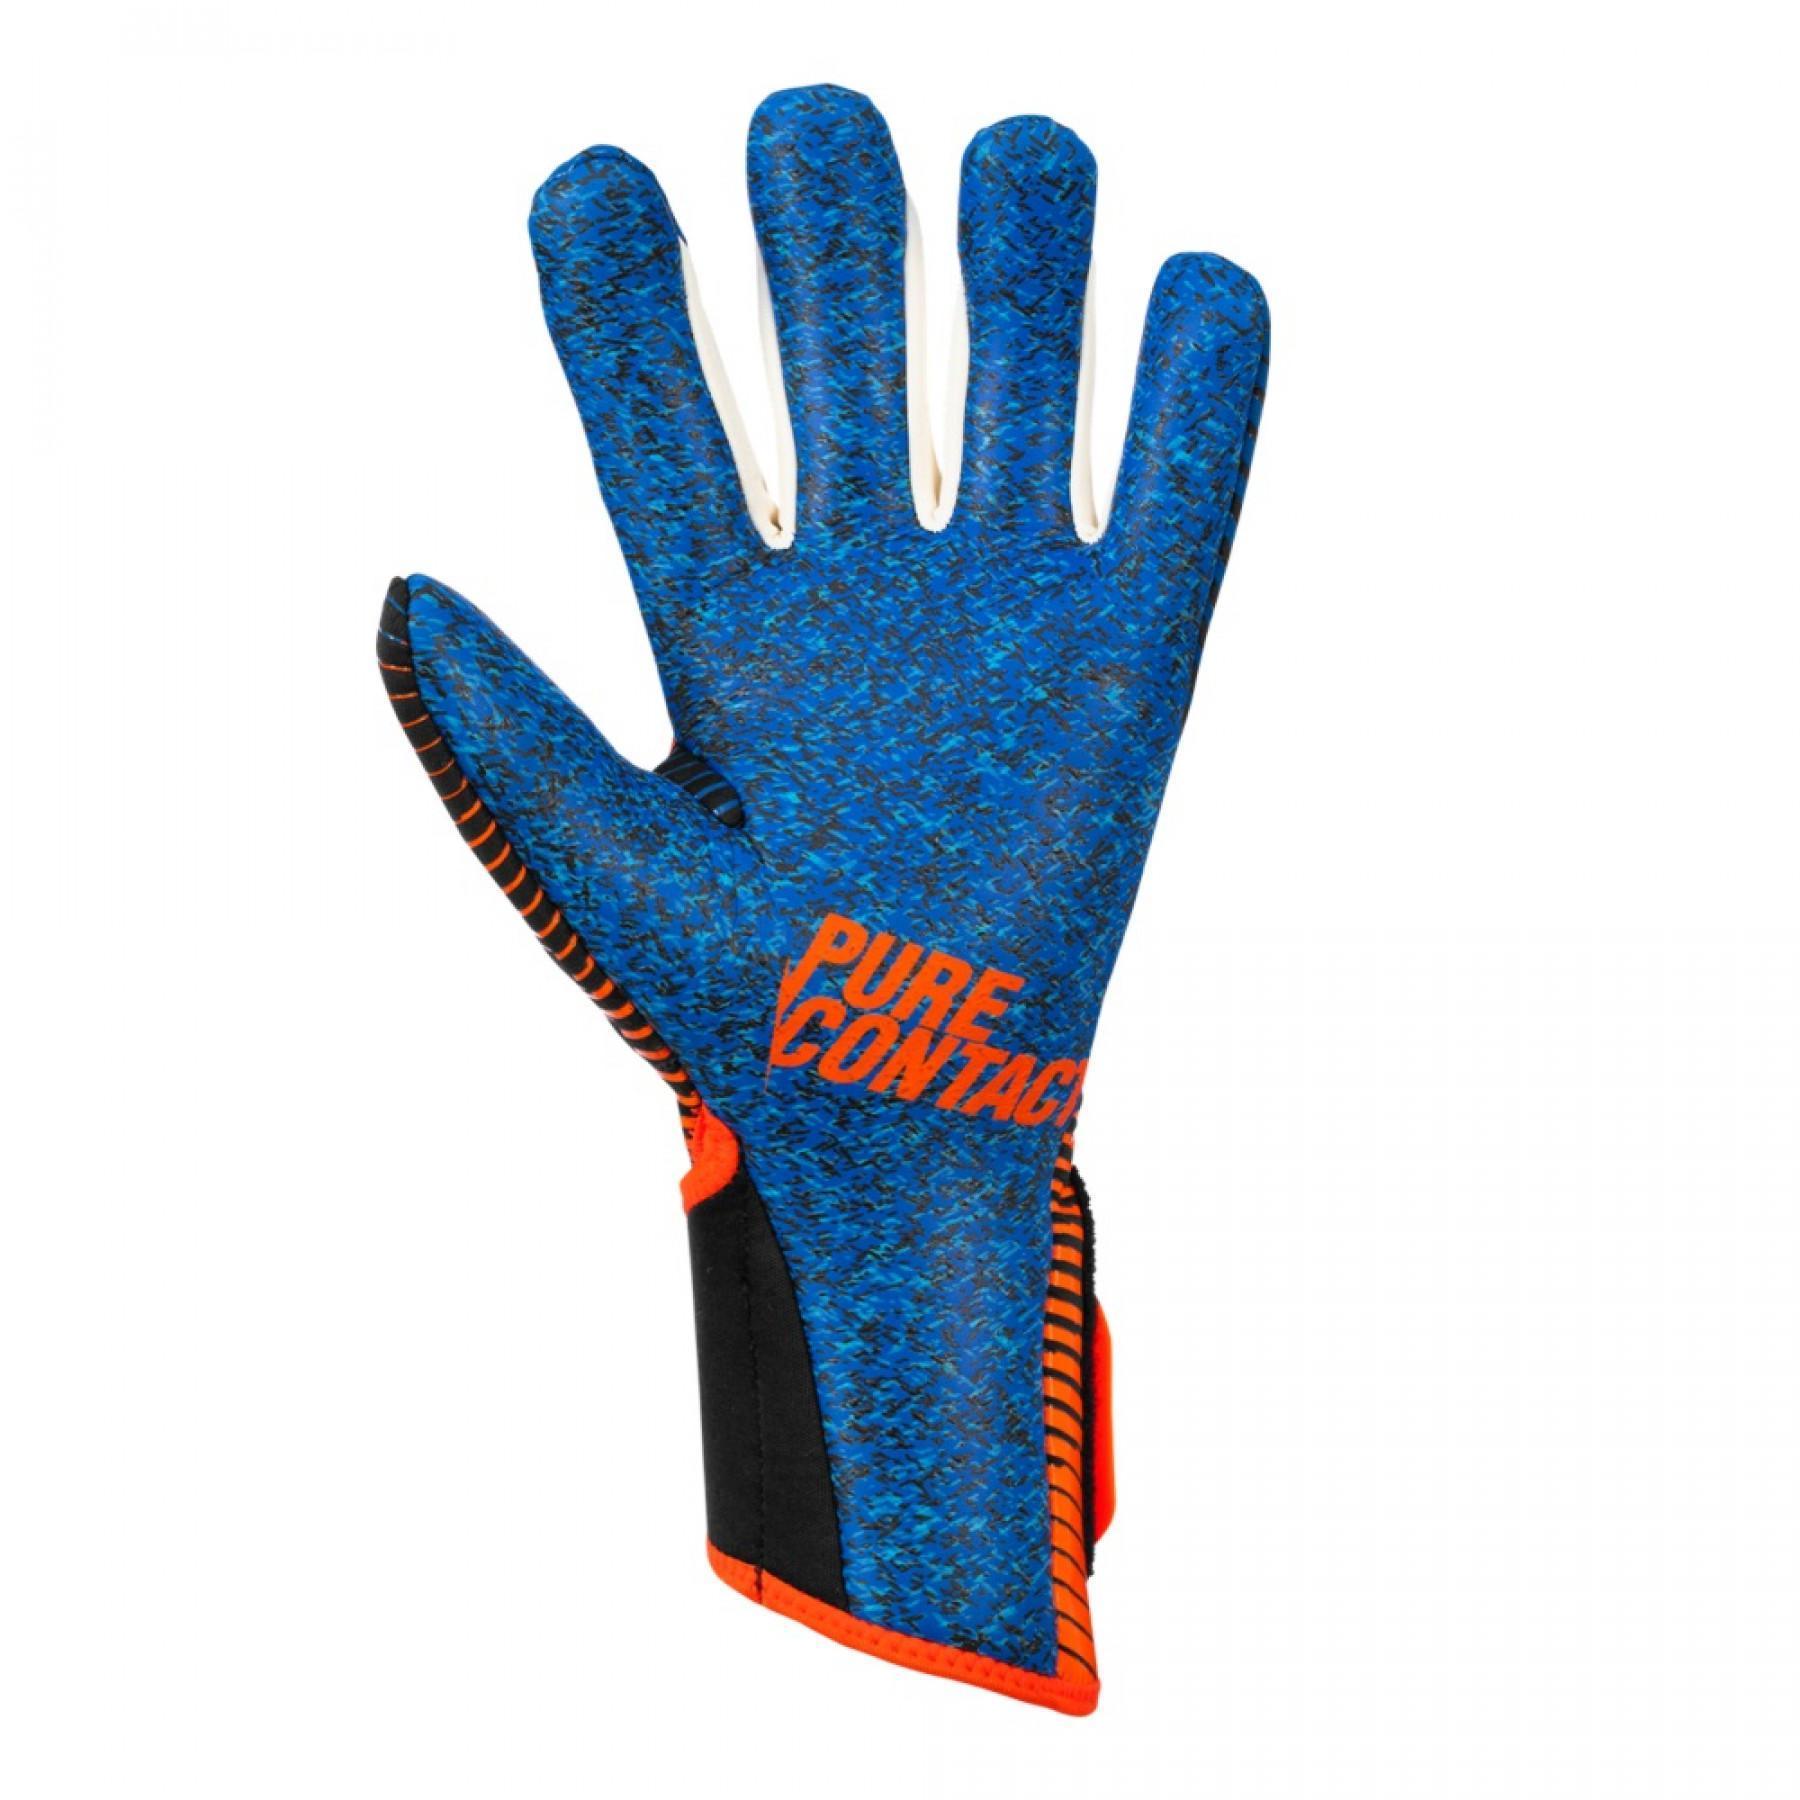 Goalkeeper gloves Reusch Pure Contact 3 G3 Fusion